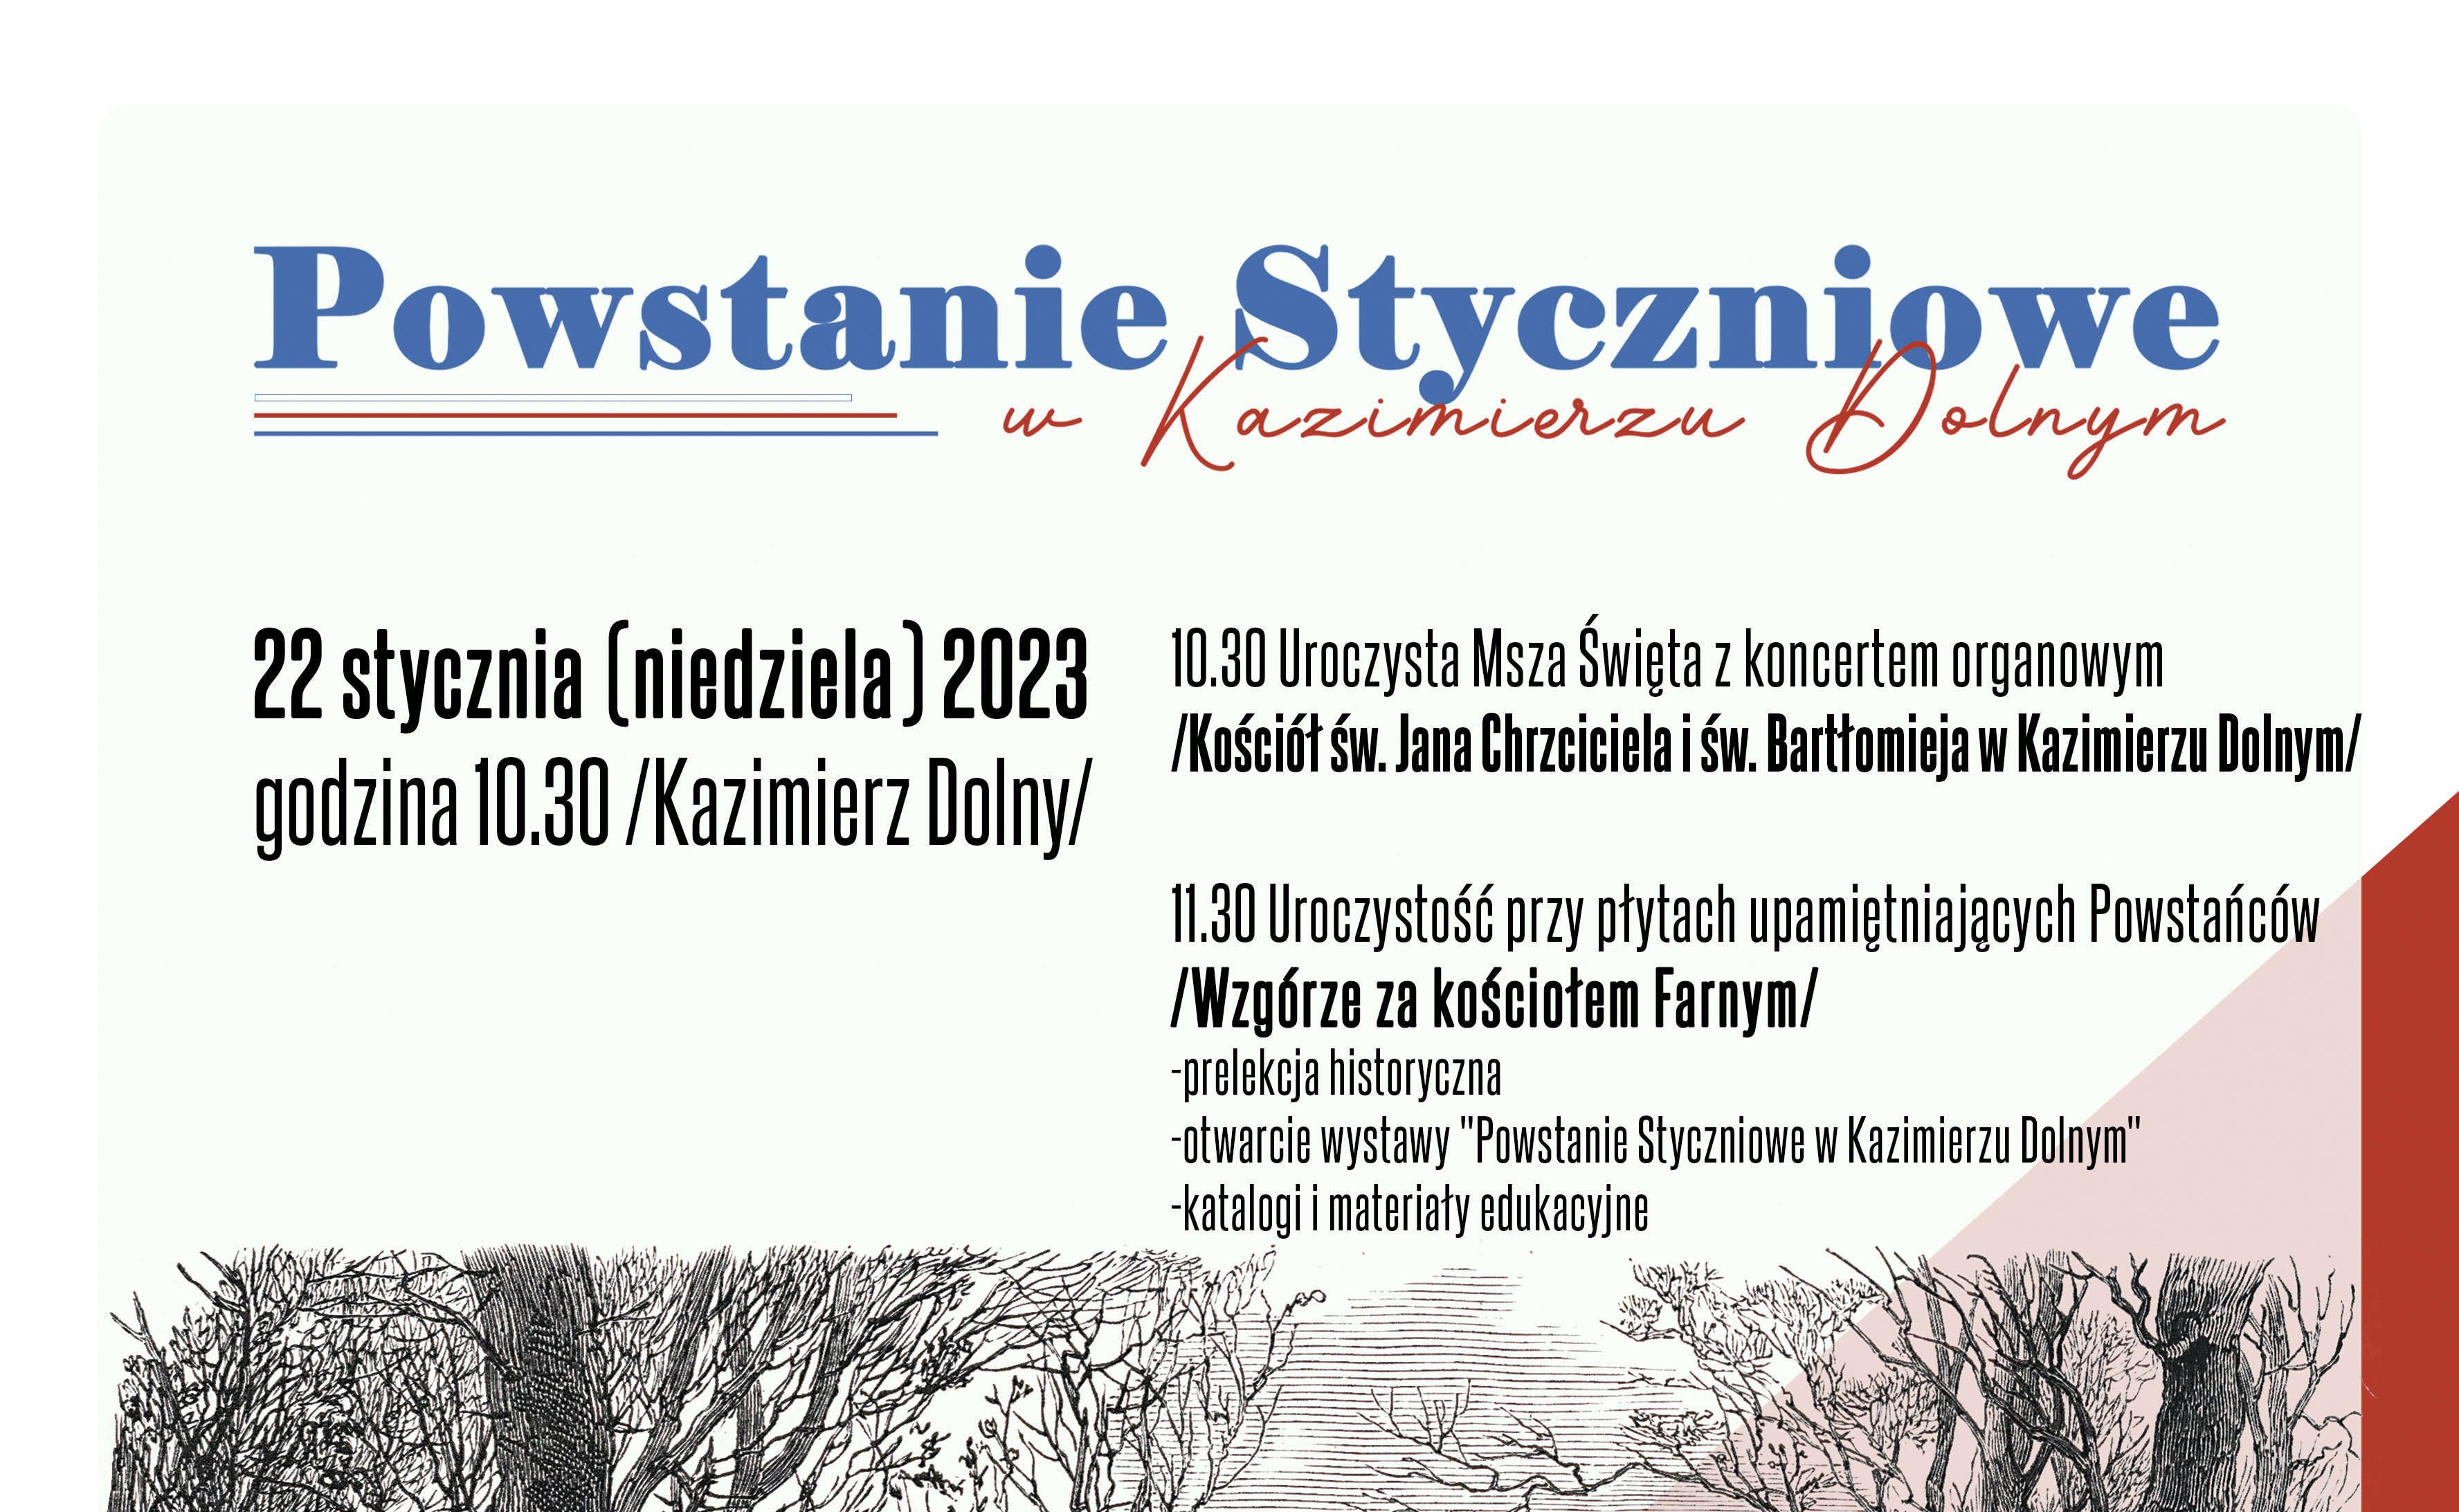 „Powstanie Styczniowe w Kazimierzu Dolnym” – zapraszamy do udziału w wydarzeniu